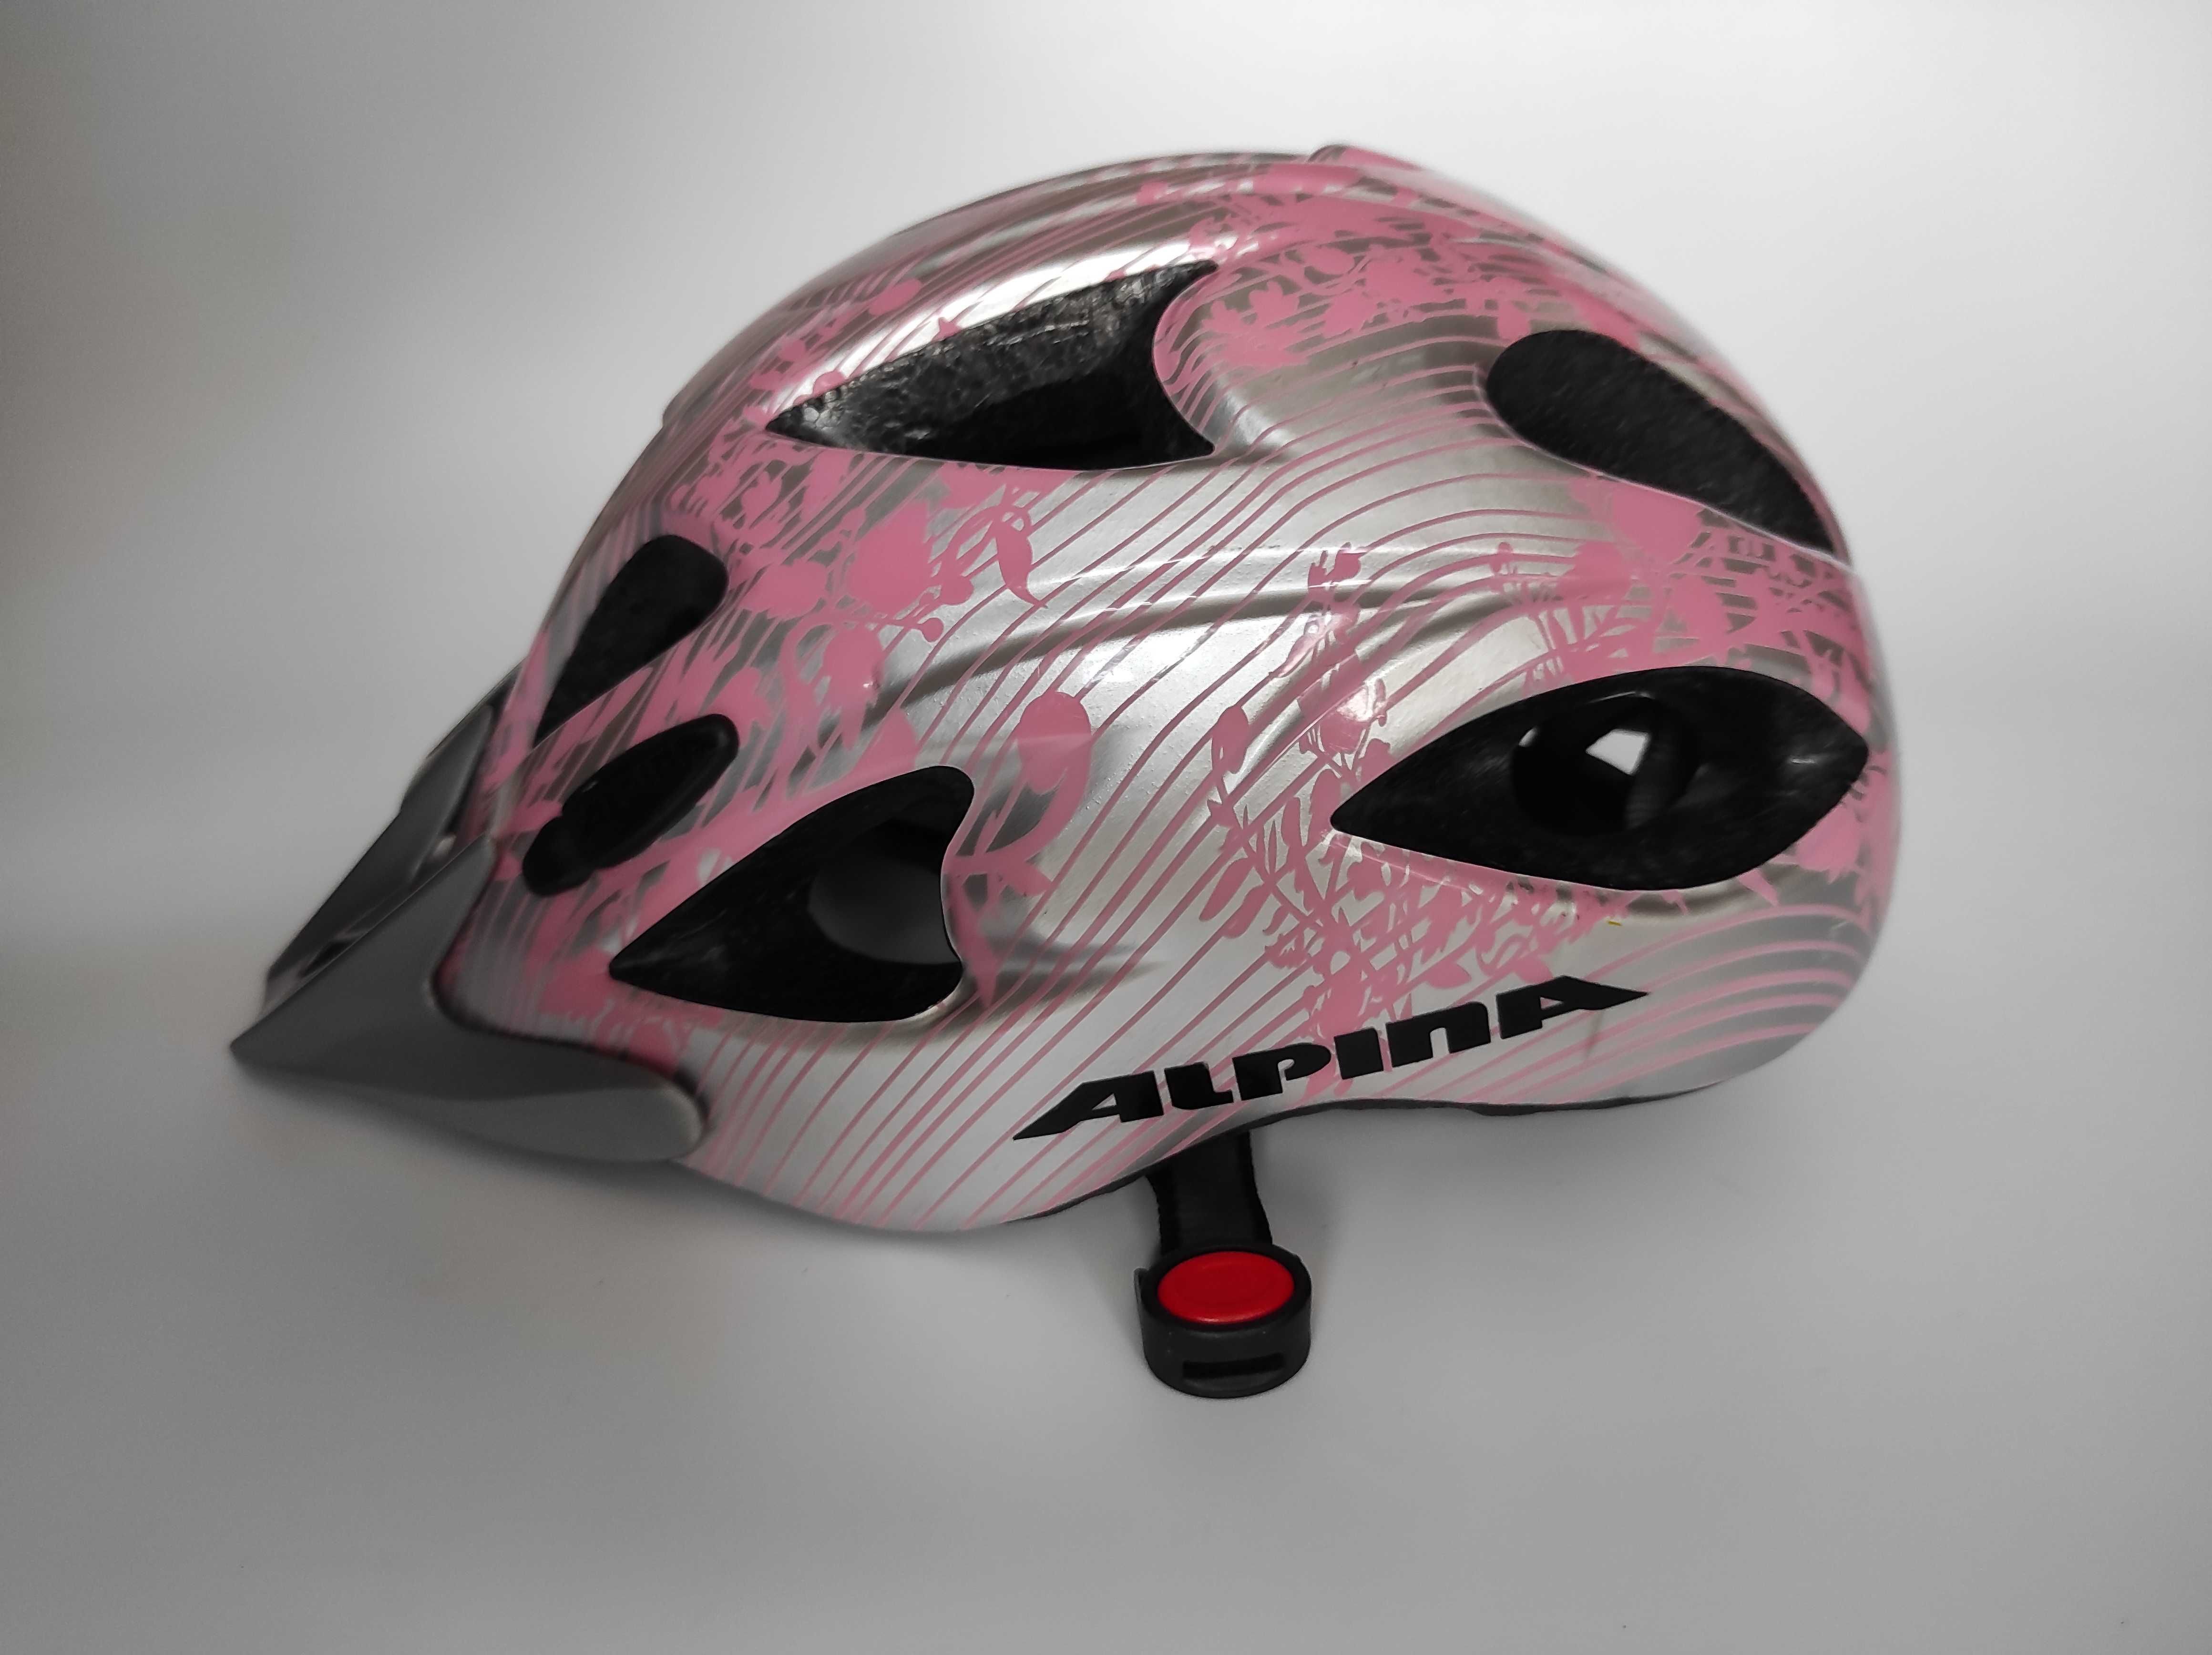 Шлем защитный Alpina Bandit MTB, размер 52-57см, велосипедный